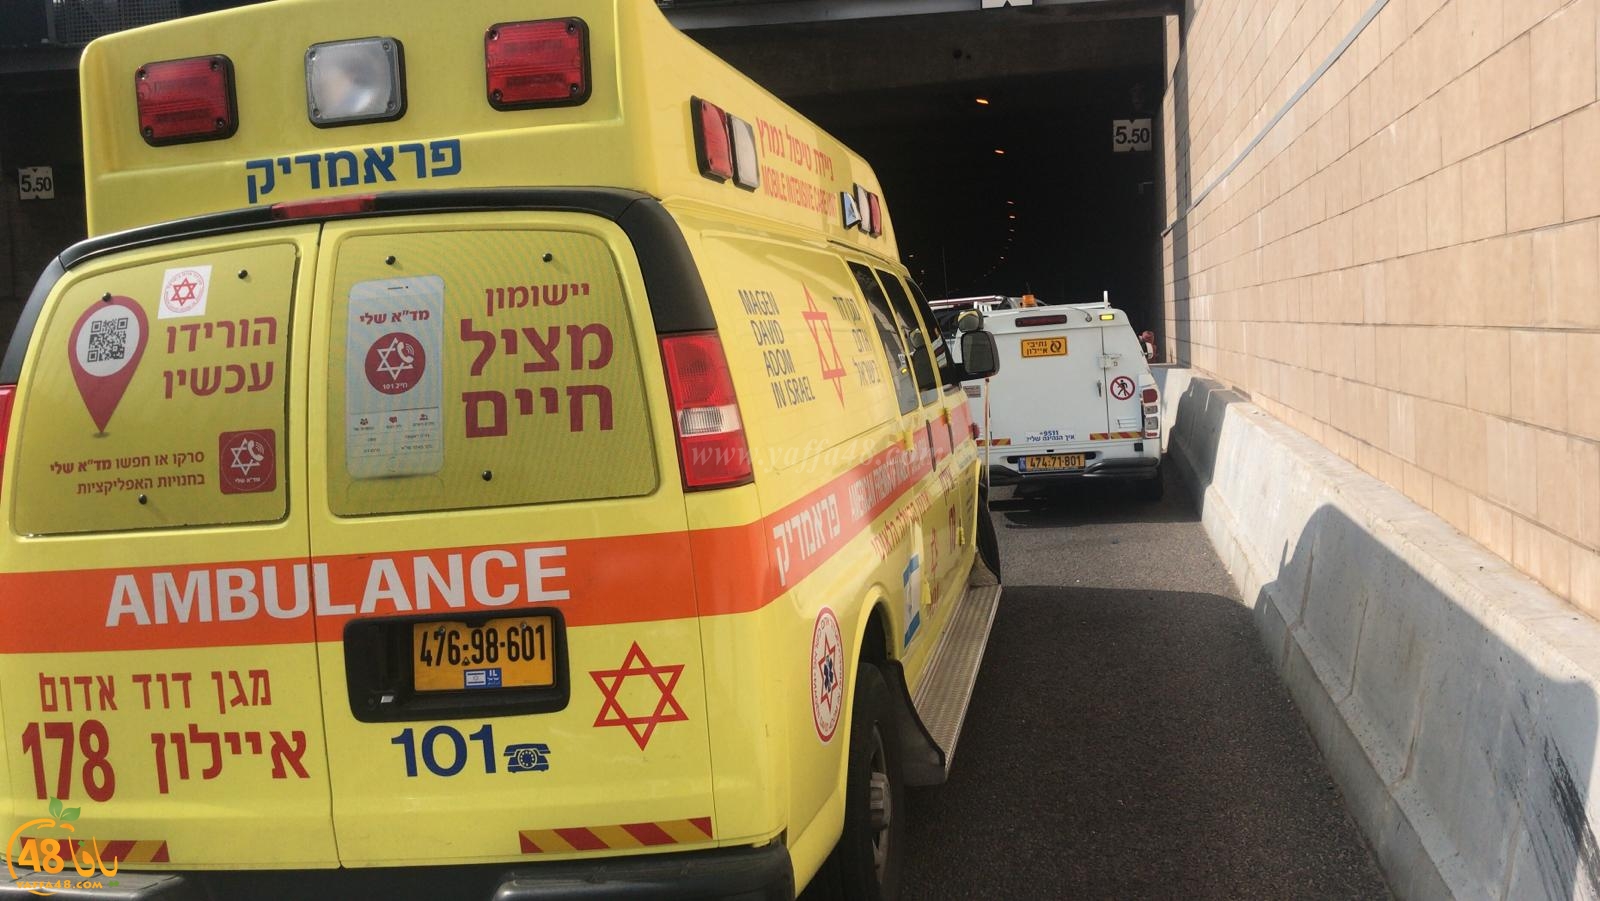  يافا: عمليات انعاش لشخص أصيب بنوبة قلبية حادة داخل حافلة بمفرق فولفسون 